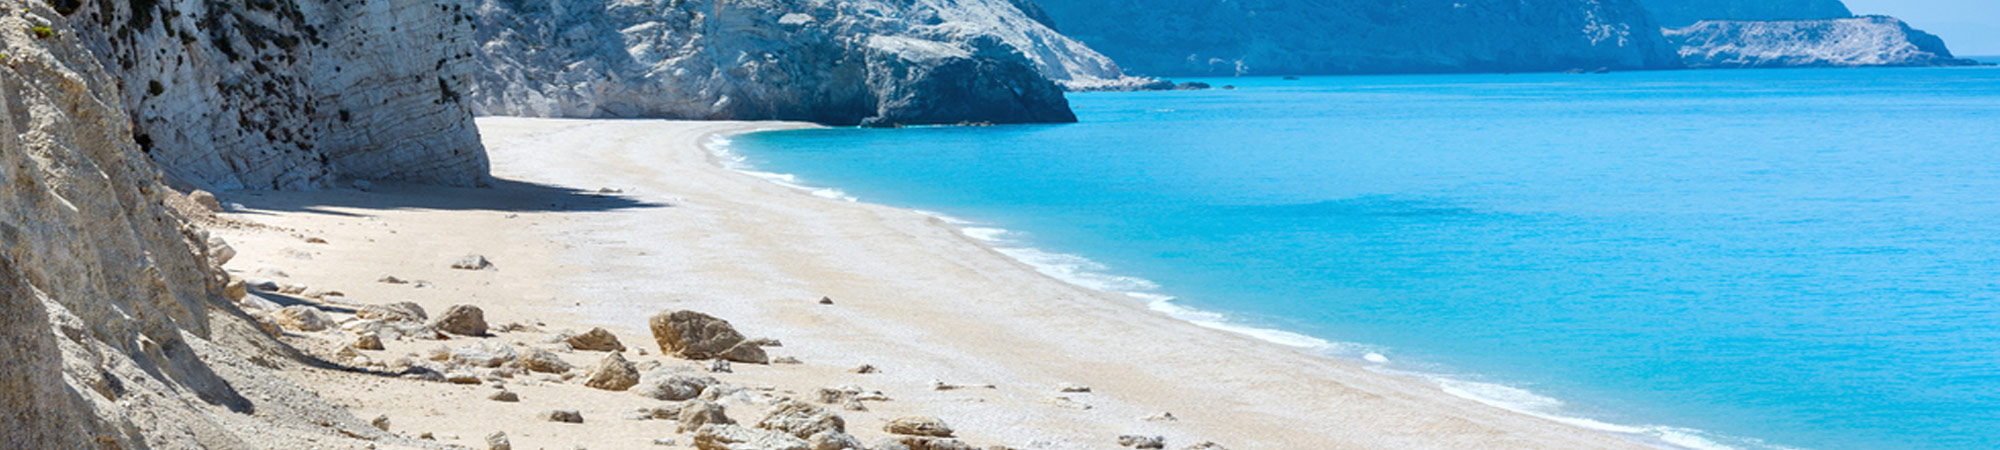 beaches ionian horizon villas lefkada greece